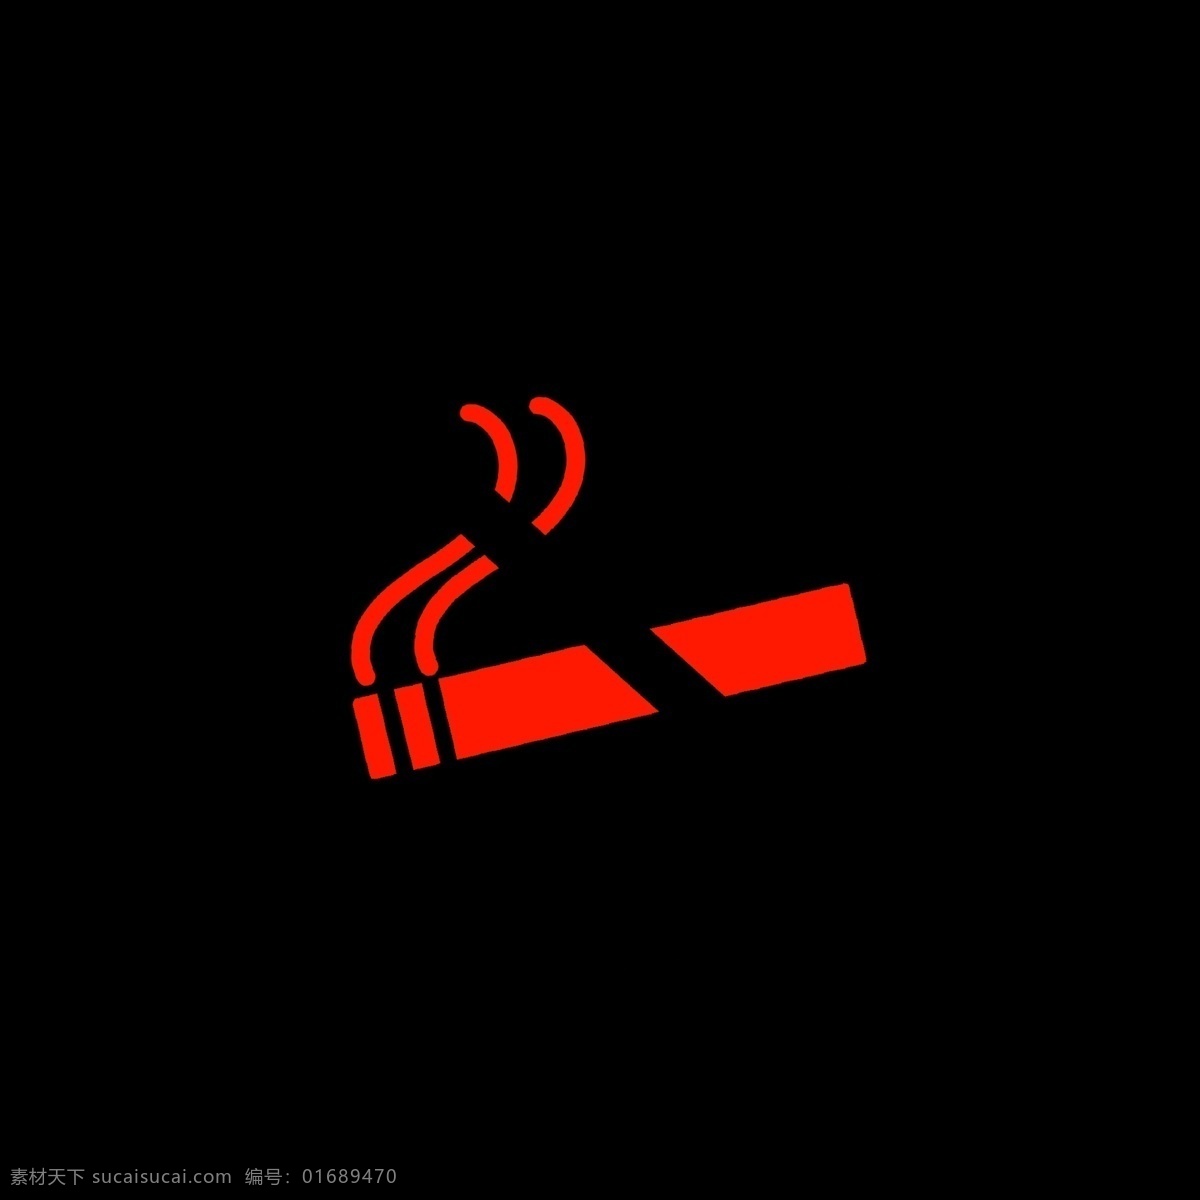 红色 黑色 禁止 吸烟 标识 运行 不可以 拒绝 不能操作 无法实施 请停止 stop 停下 灭掉烟头